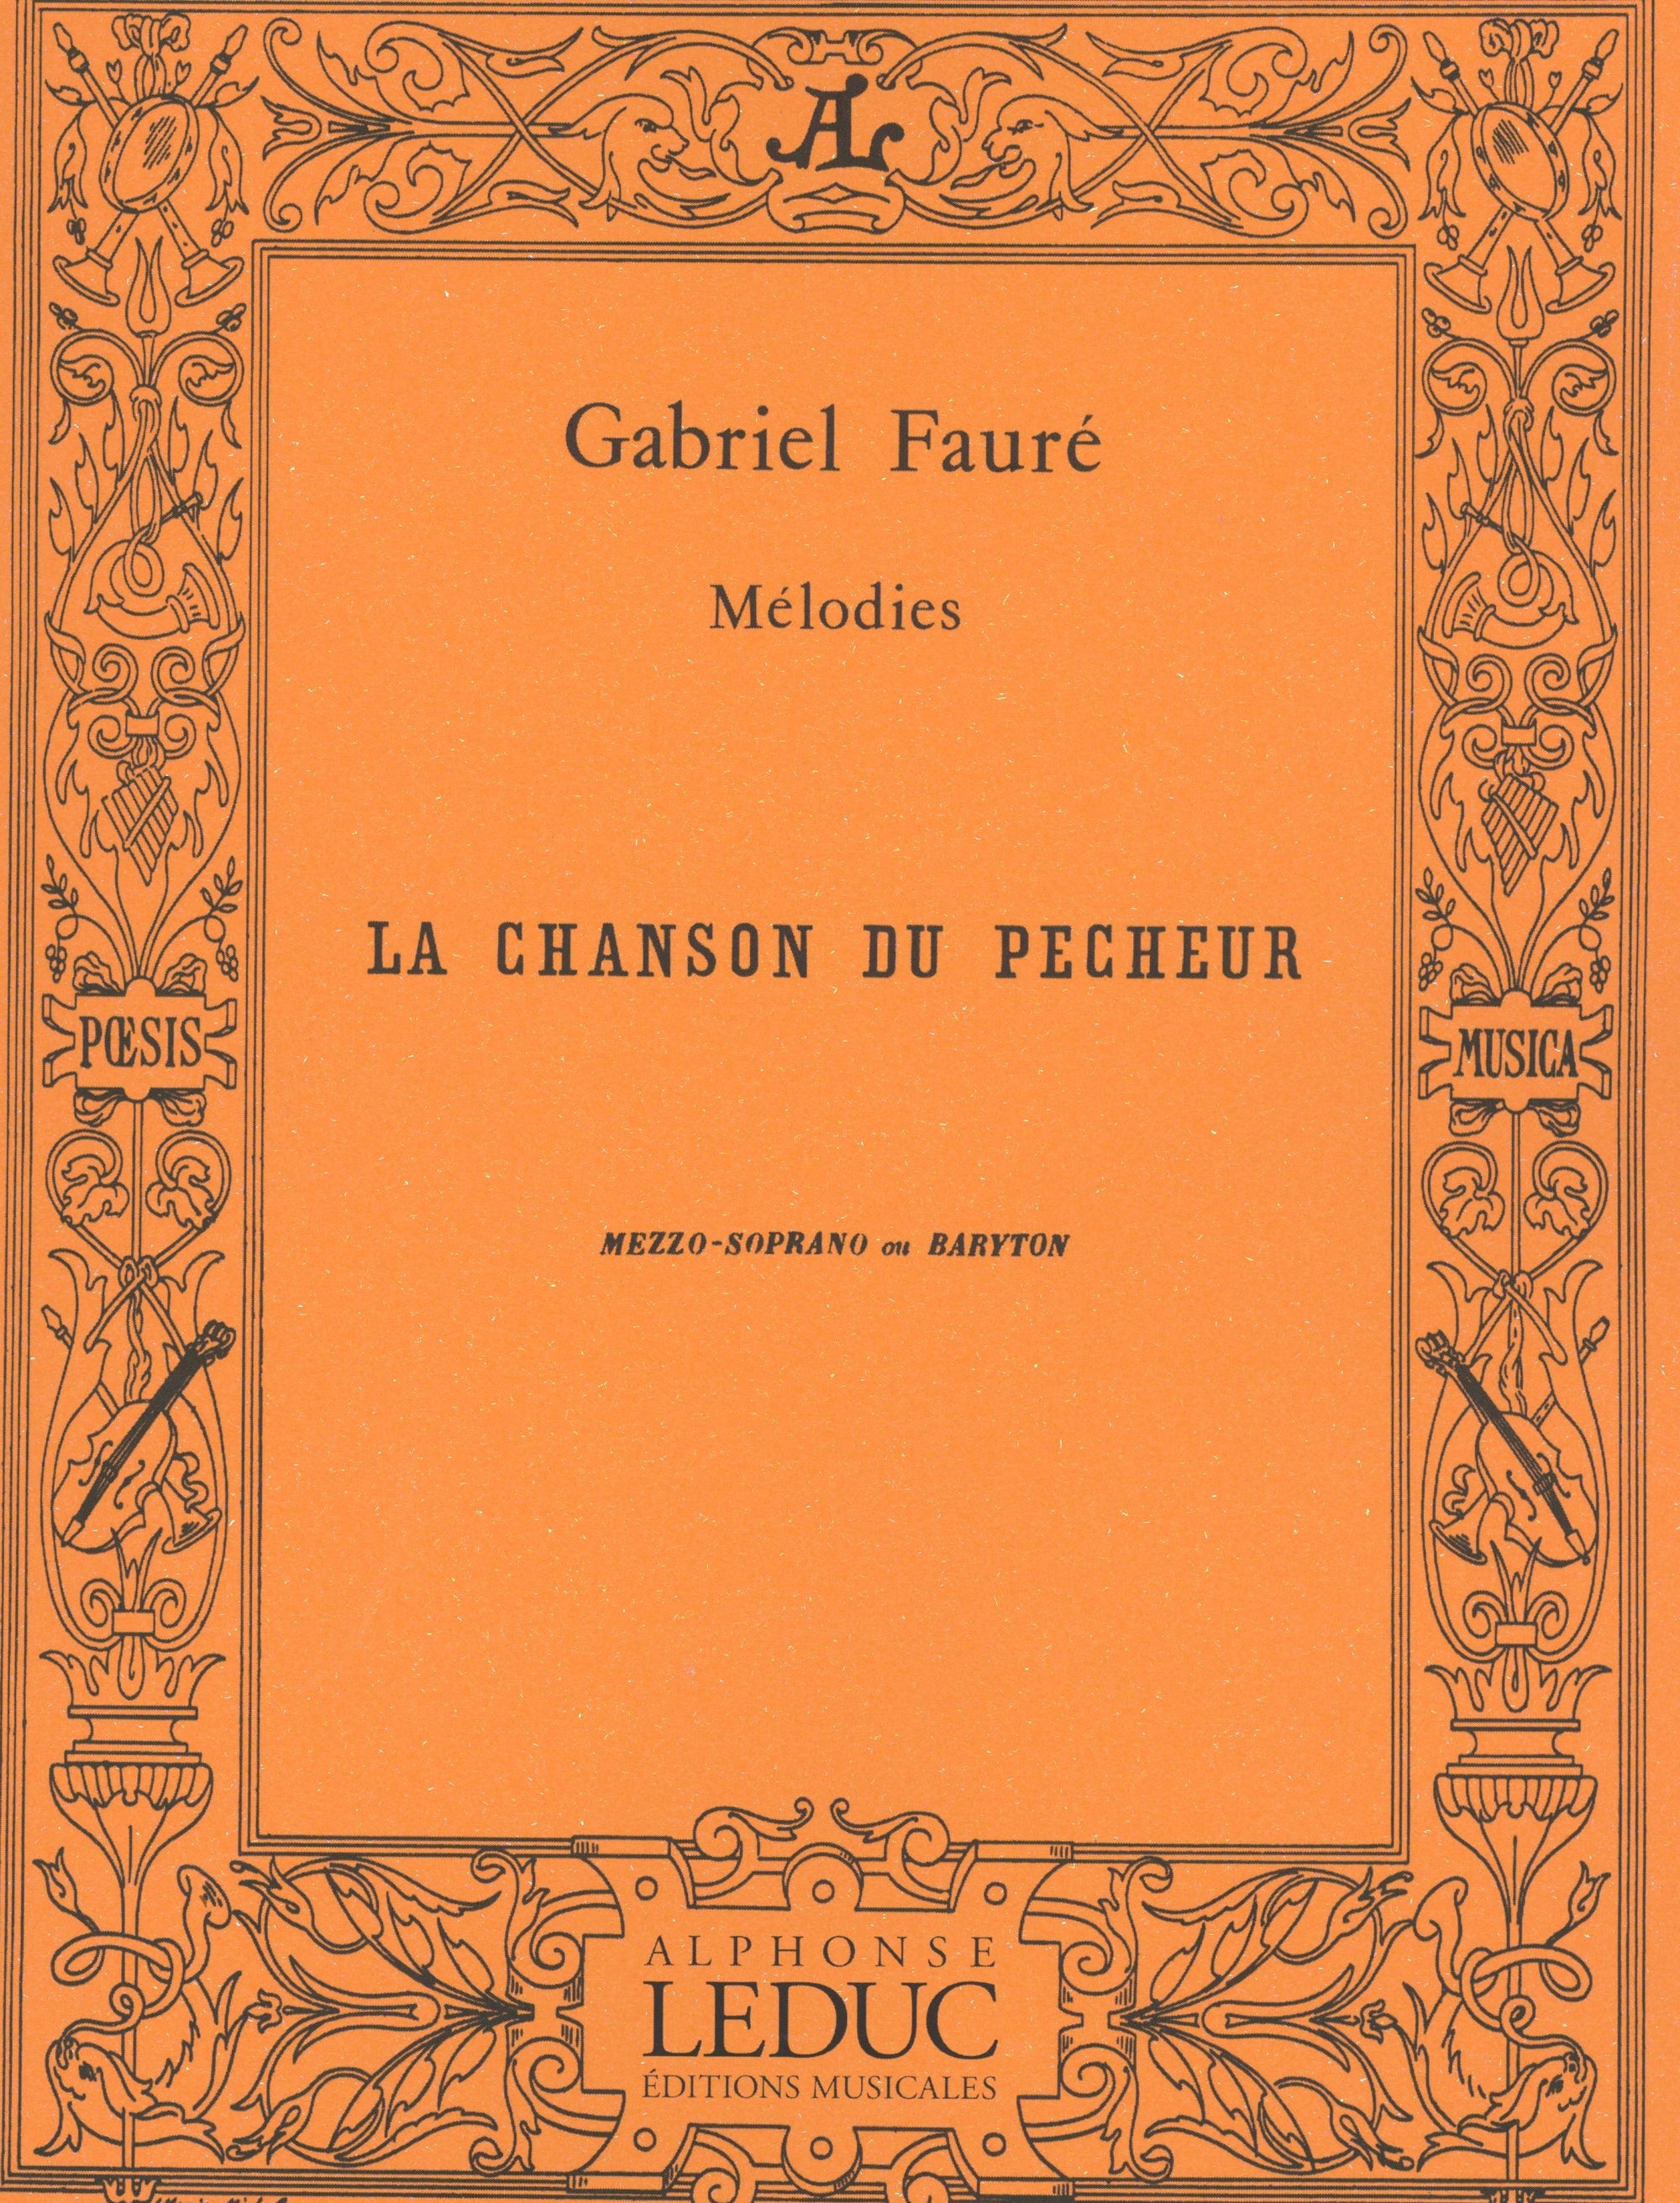 Fauré: La chanson du pêcheur, Op. 4, No. 1